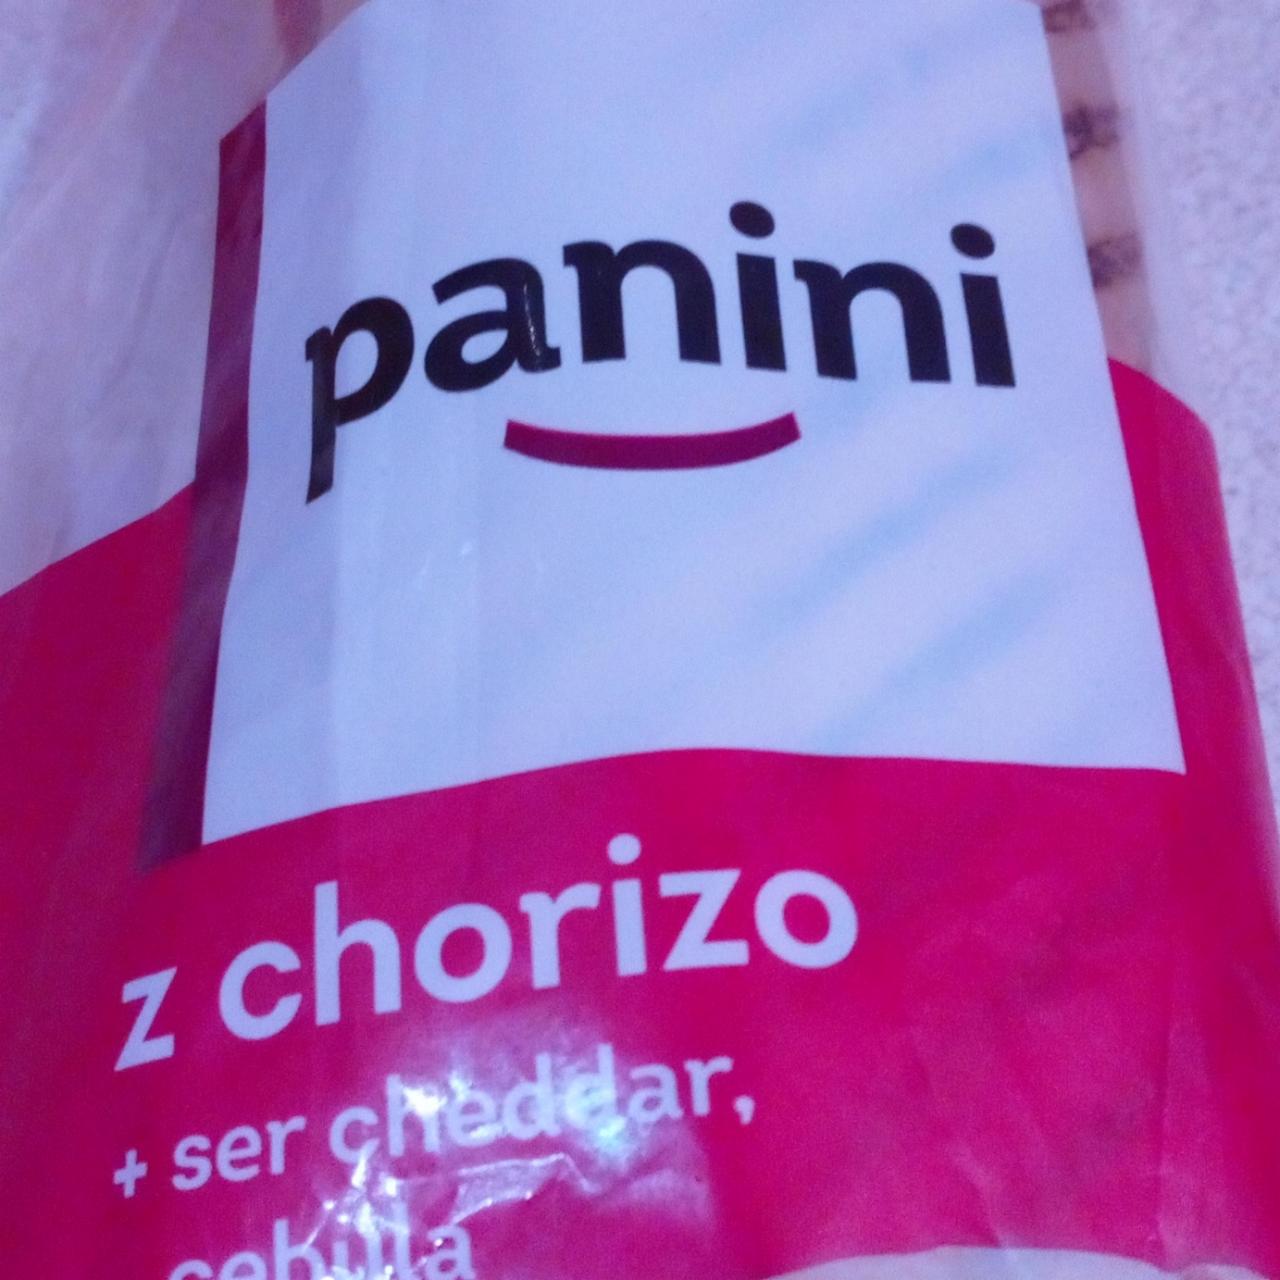 Zdjęcia - Panini z Chorizo +Ser Cheddar